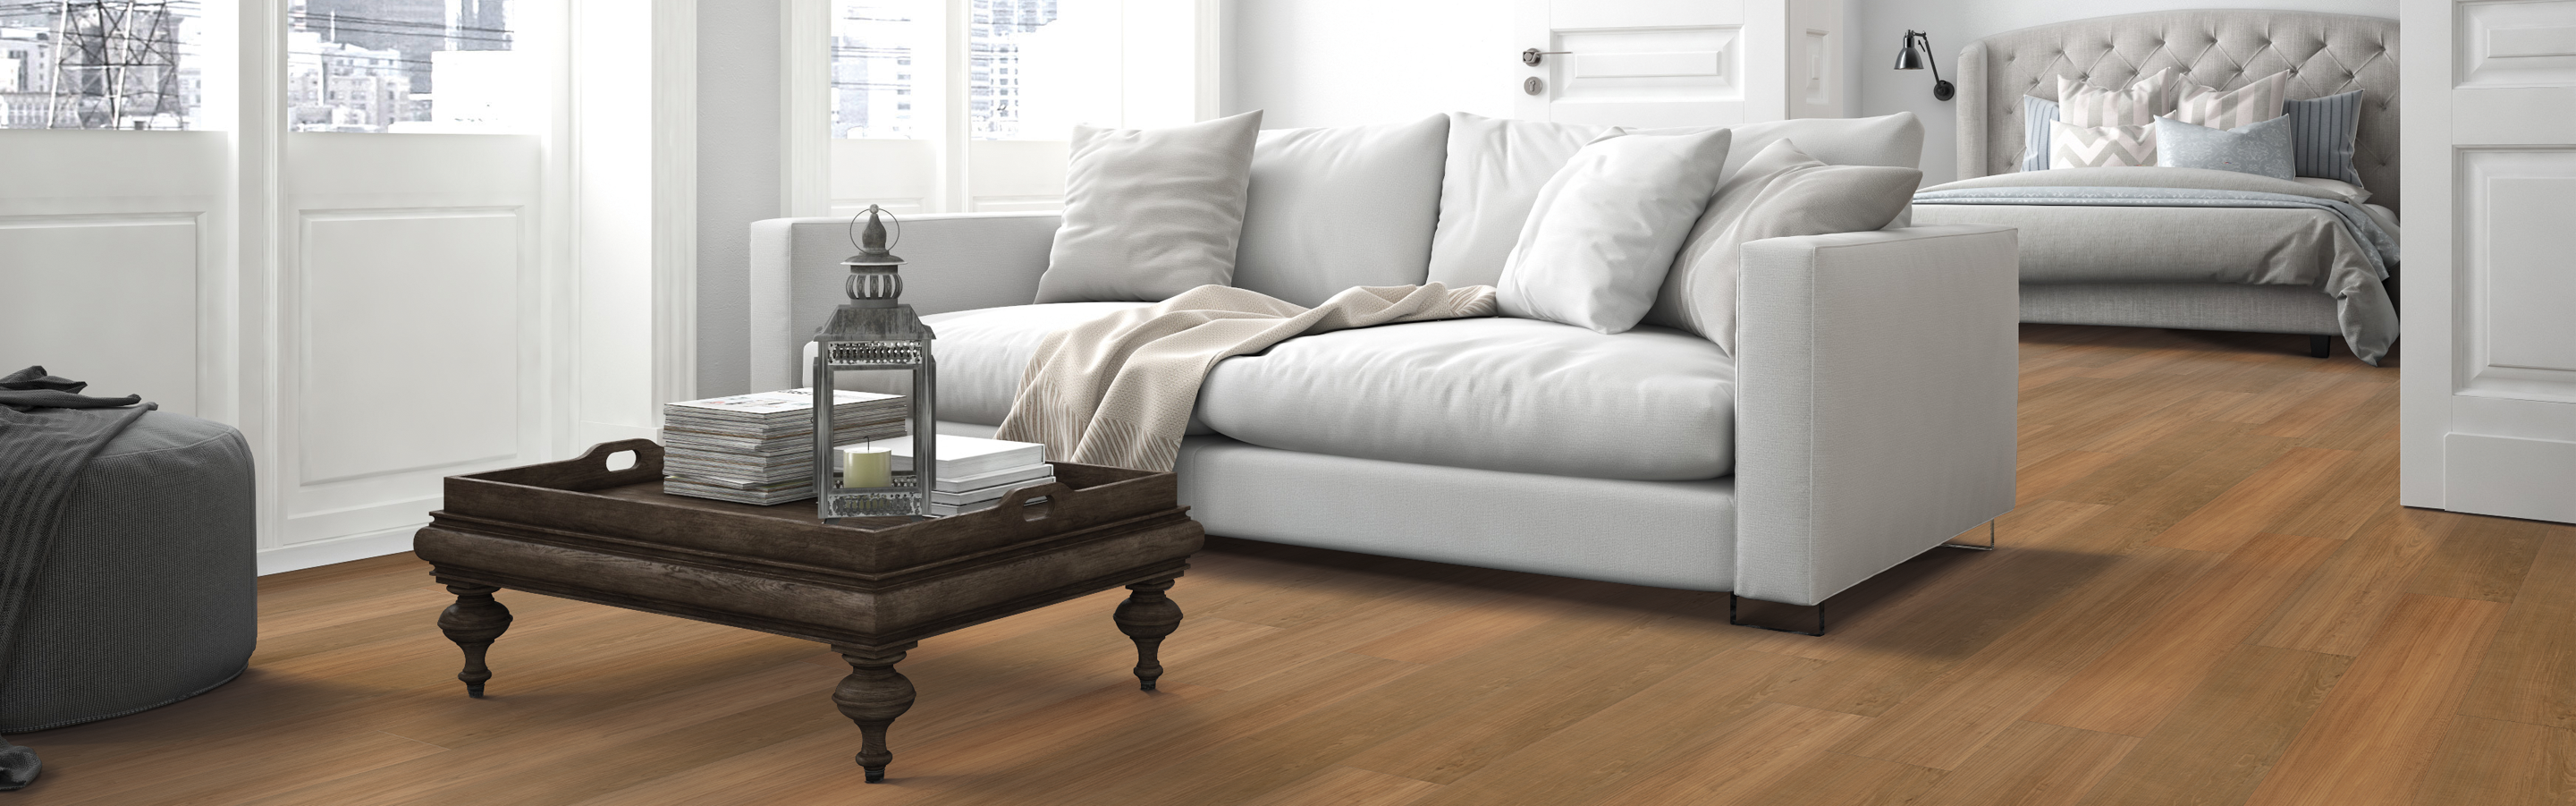 wood look vinyl flooring in living room